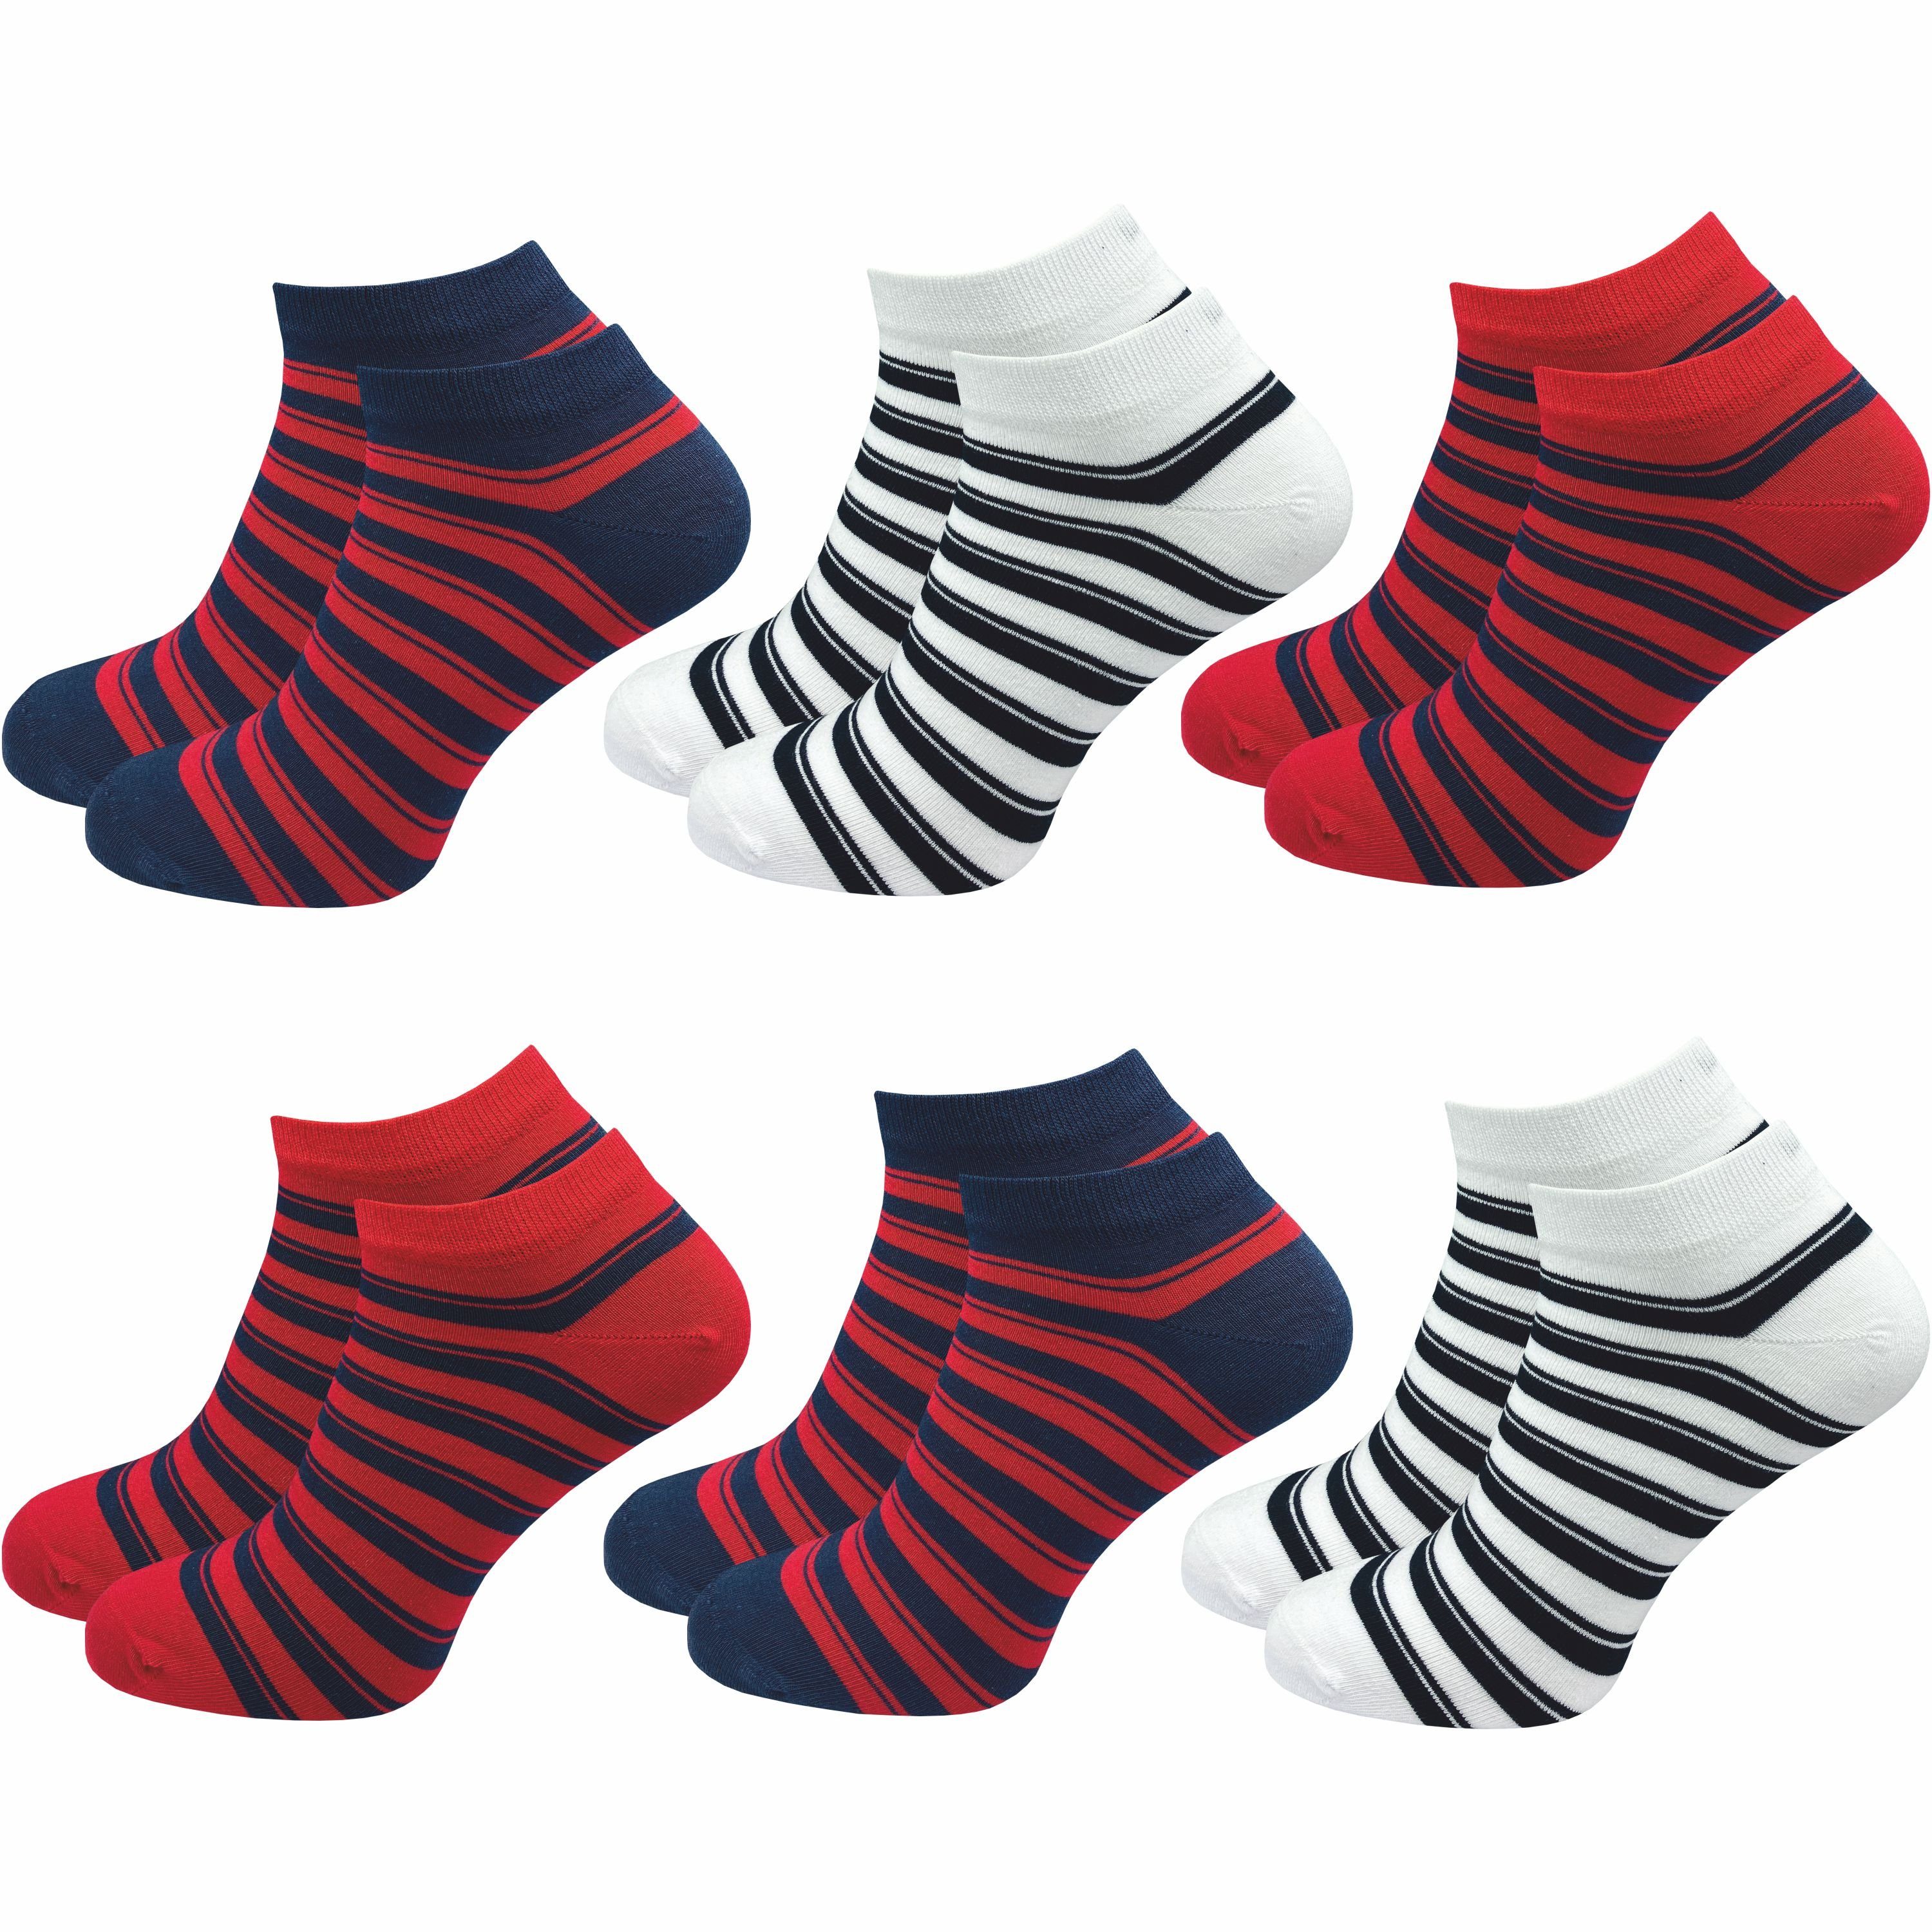 GAWILO Sneakersocken für Damen & Herren - bunte kurze Socken mit hohem Baumwollanteil (6 Paar) Extra feines Maschenbild - absolut blickdicht - Ringel Muster Farbig 2